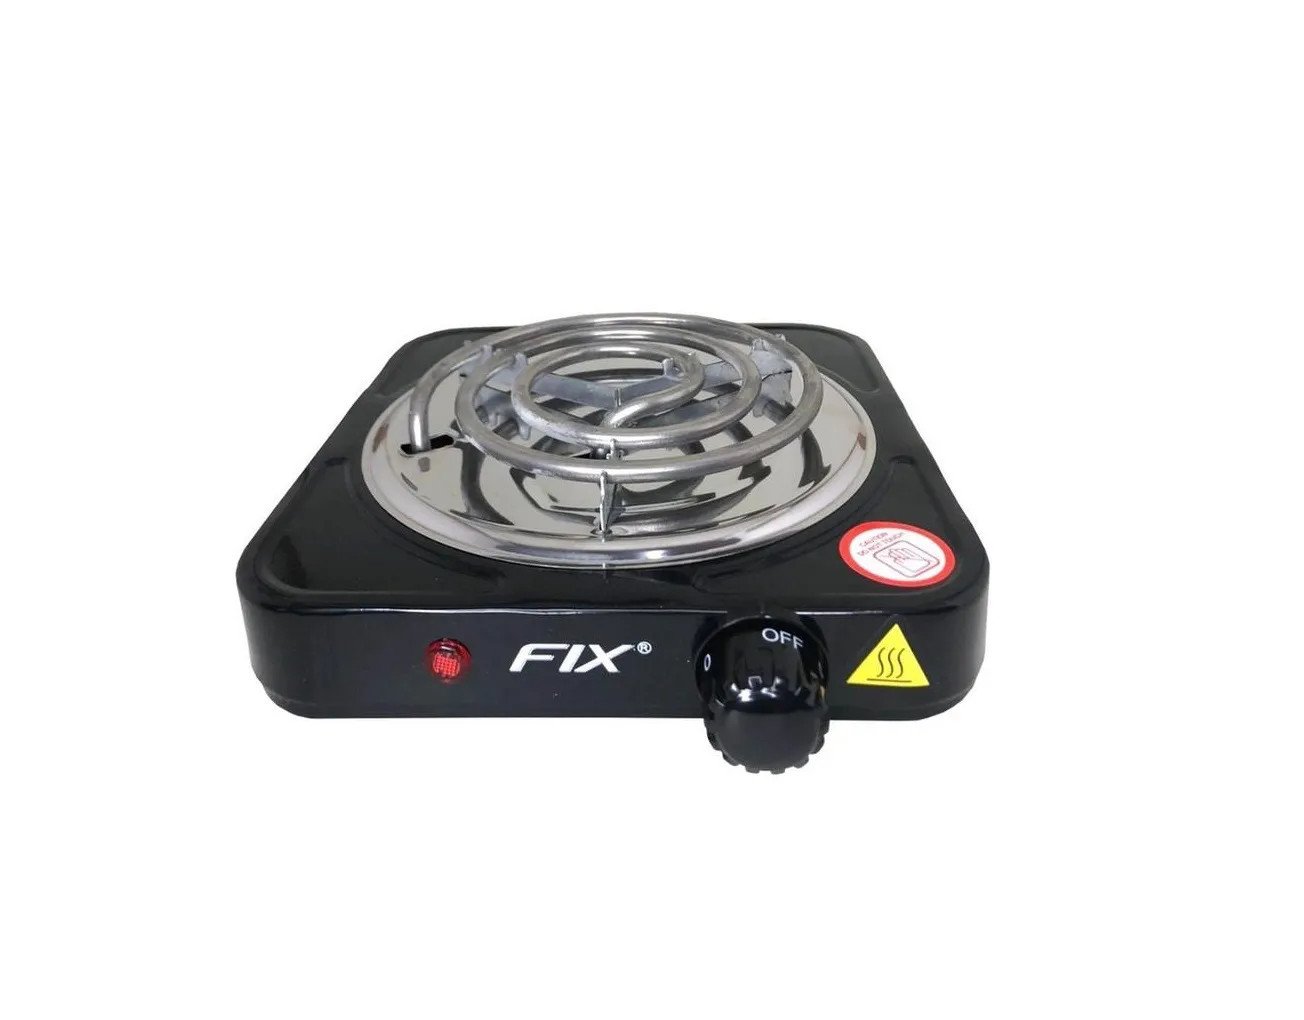 Super Fogão Cooktop Elétrica Fix Fxf0601 Preto 110v Portátil - 1